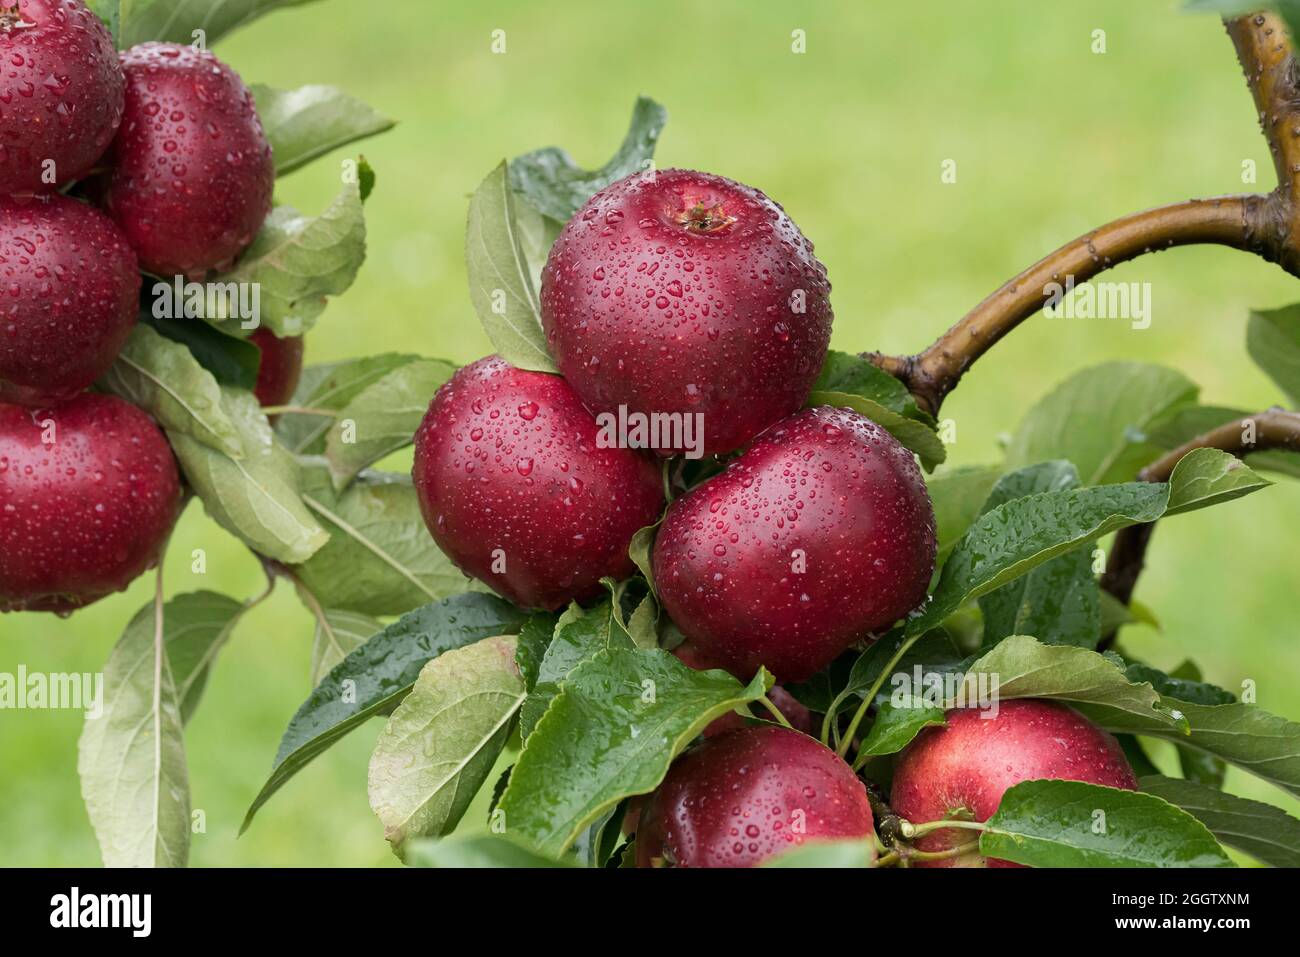 apple (Malus domestica 'Gaia', Malus domestica Gaia), apples on a tre, cultivar Gaia Stock Photo